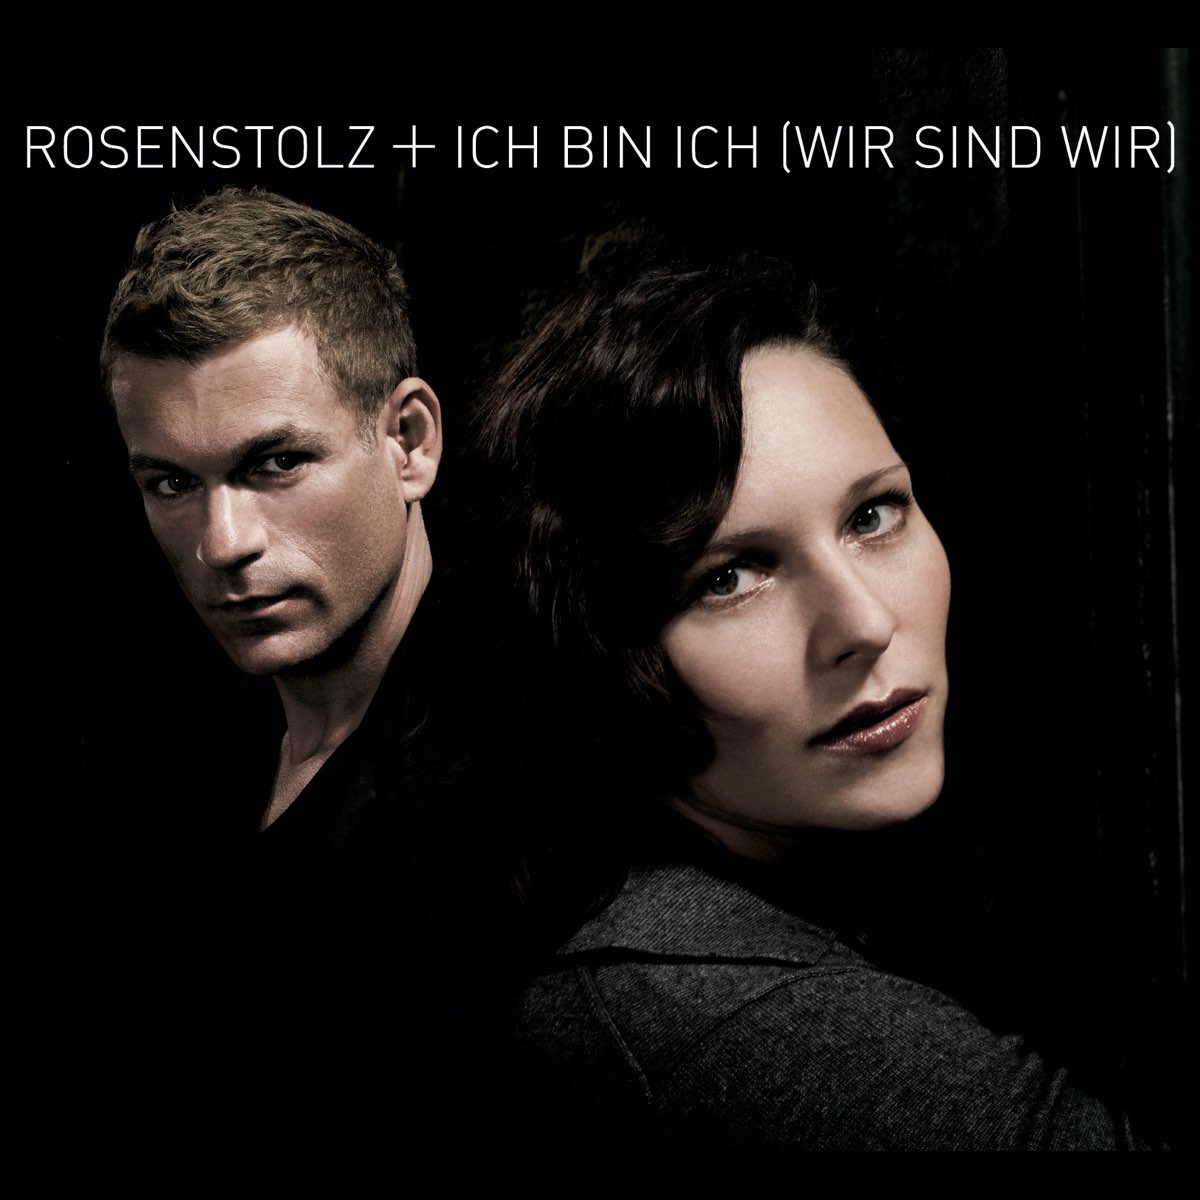 Ich bin ich (Wir sind wir) - EP - Album by Rosenstolz - Apple Music